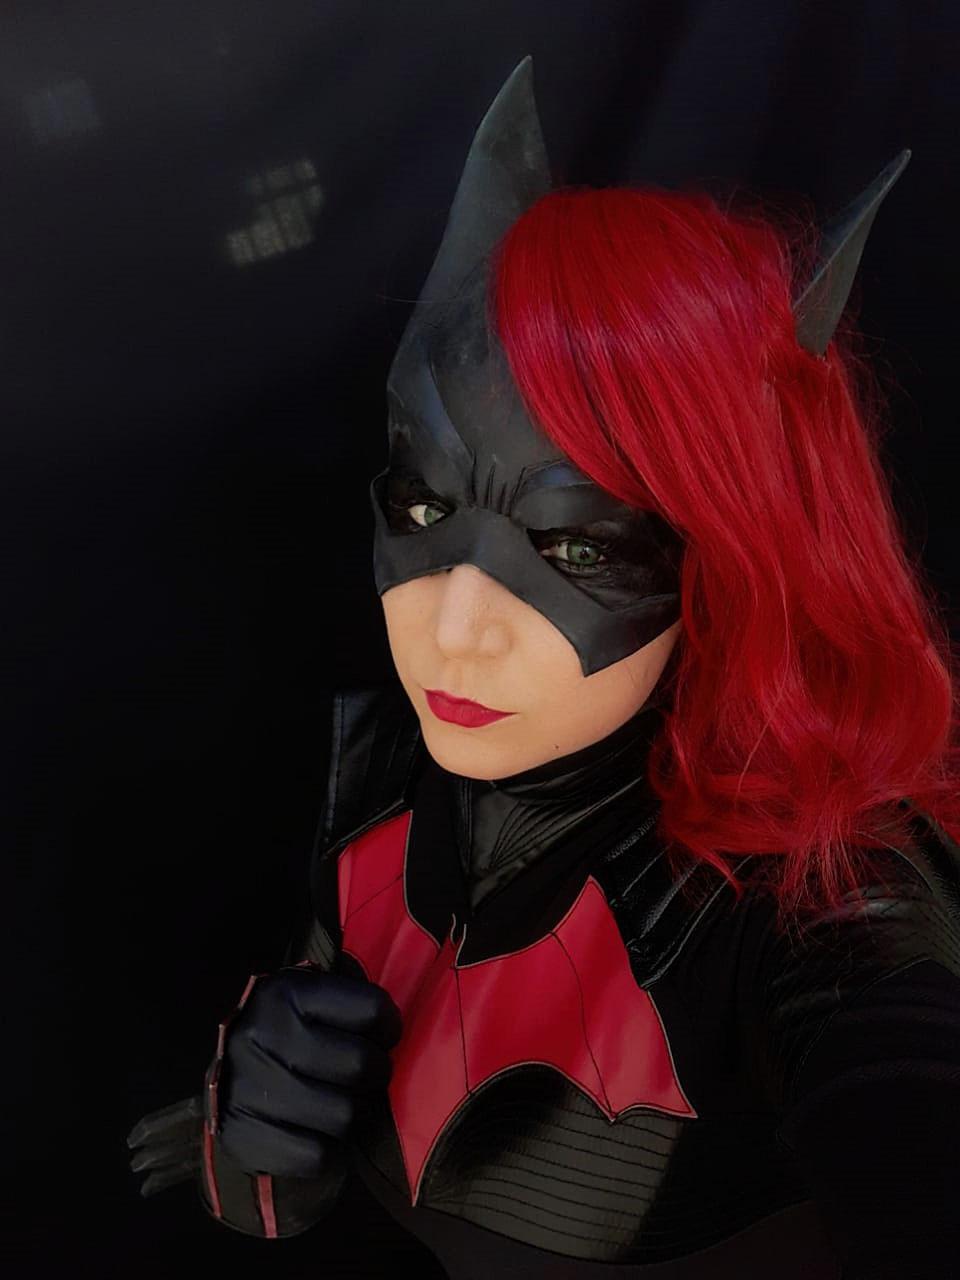 Batwoman By Rebeca Adans From Brazi